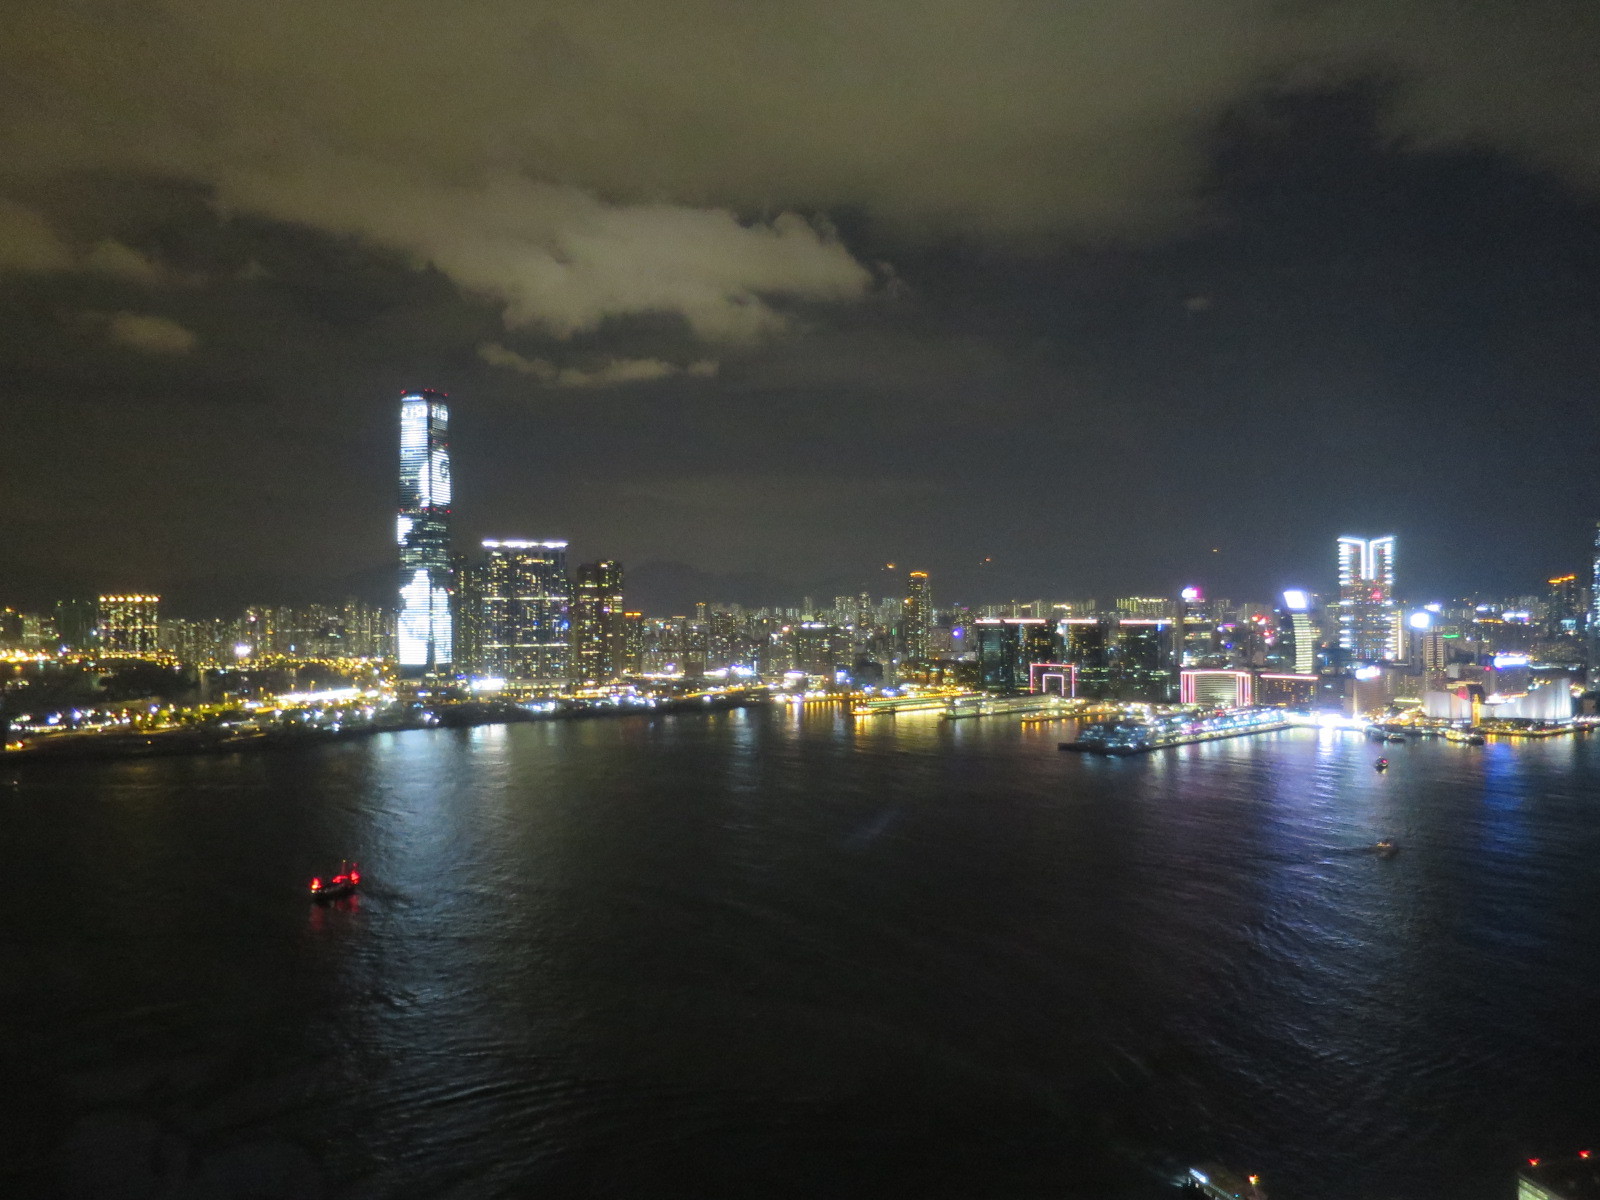 香港ナイトツアー。港の夜景を観て更にシンフォニー・オブ・ライツ。更にビクトリアピークへ。_d0019916_19082576.jpg